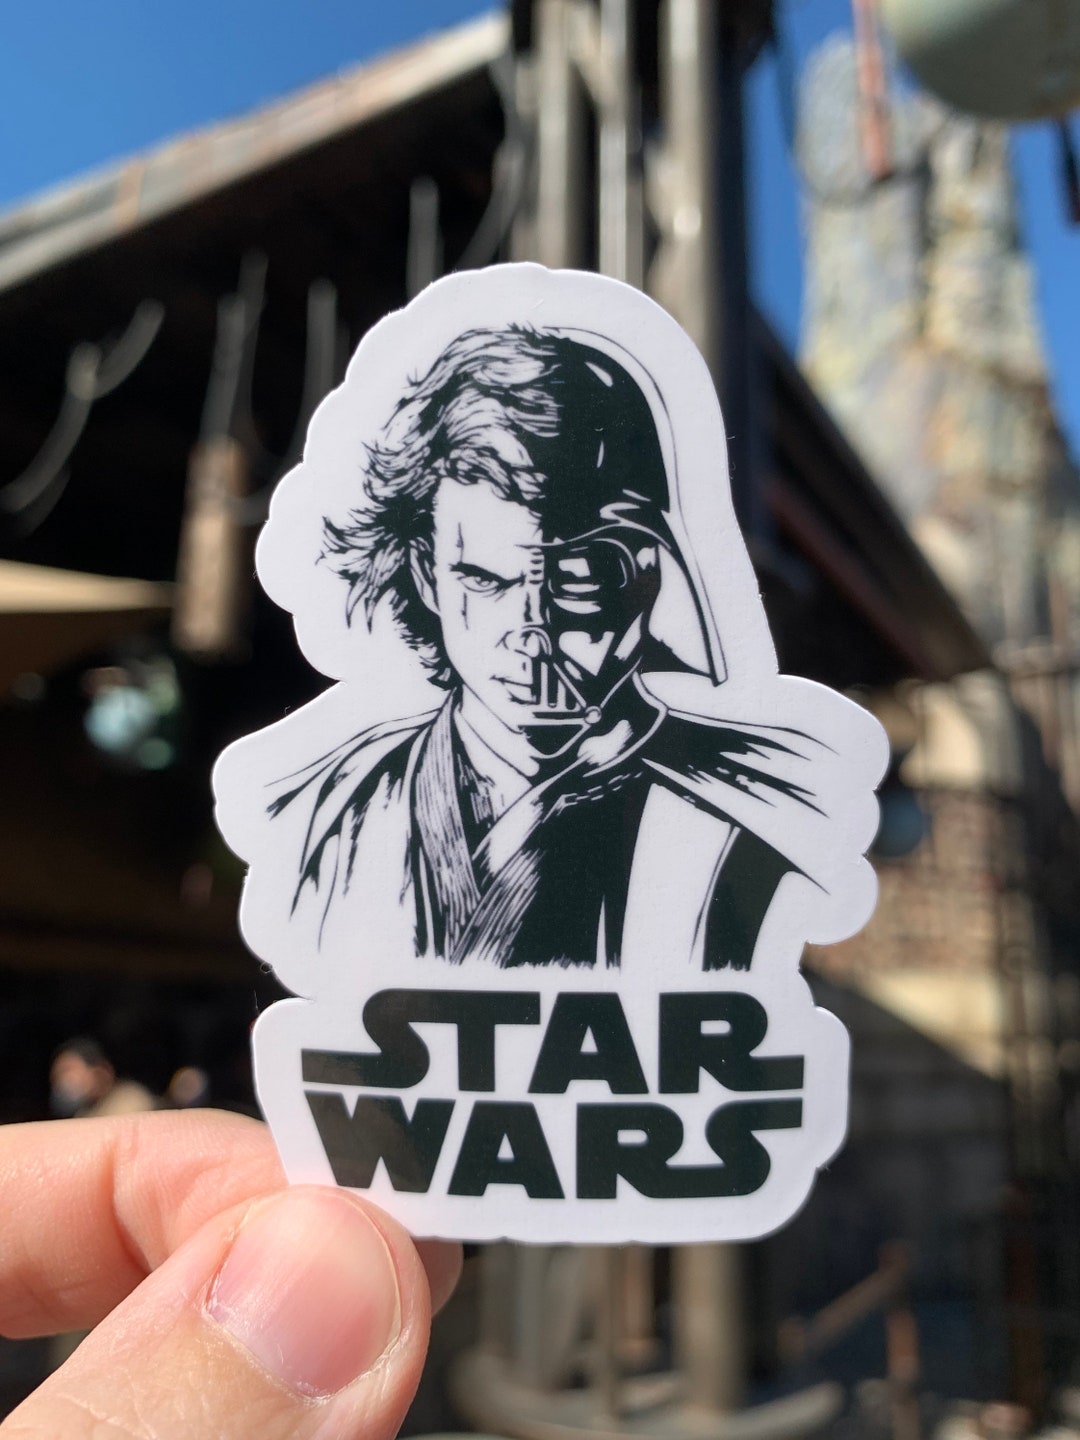 Stickers autocollant Star Wars Dark Vador 42 cm